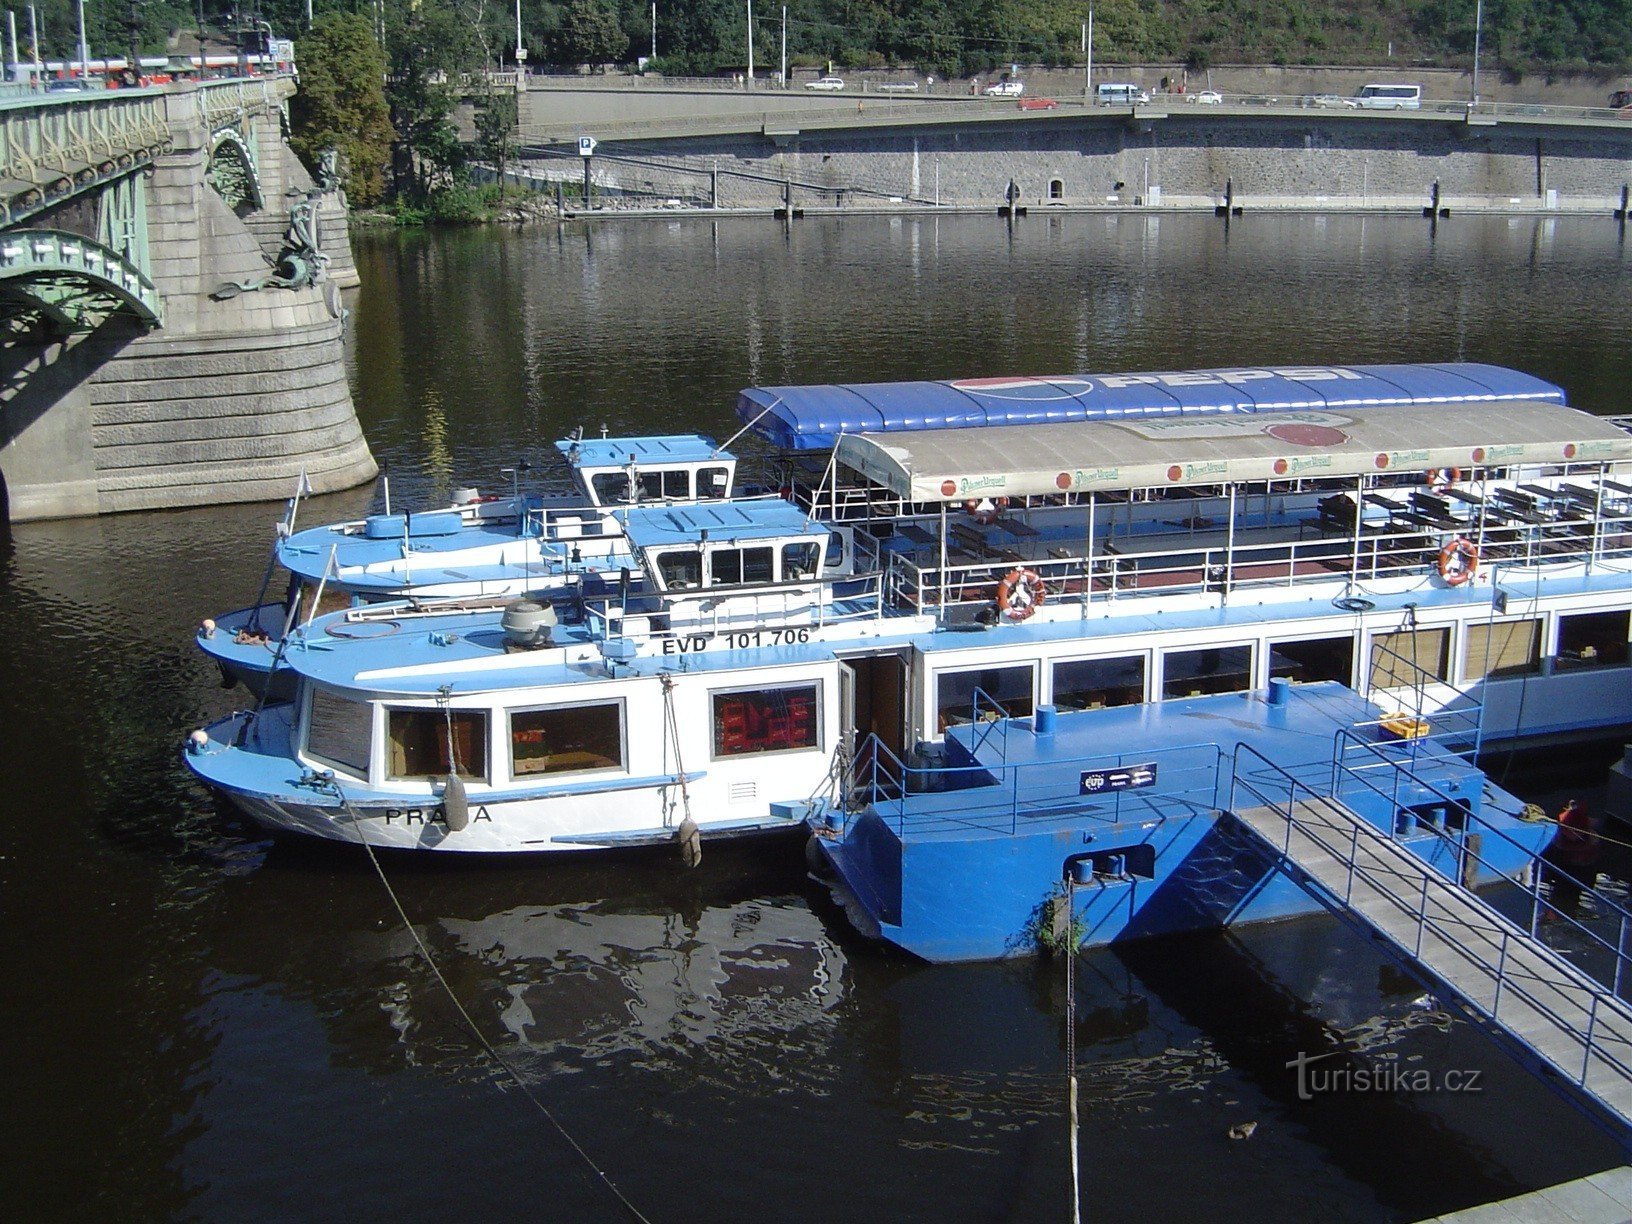 Boat cruise in Prague on the Vltava